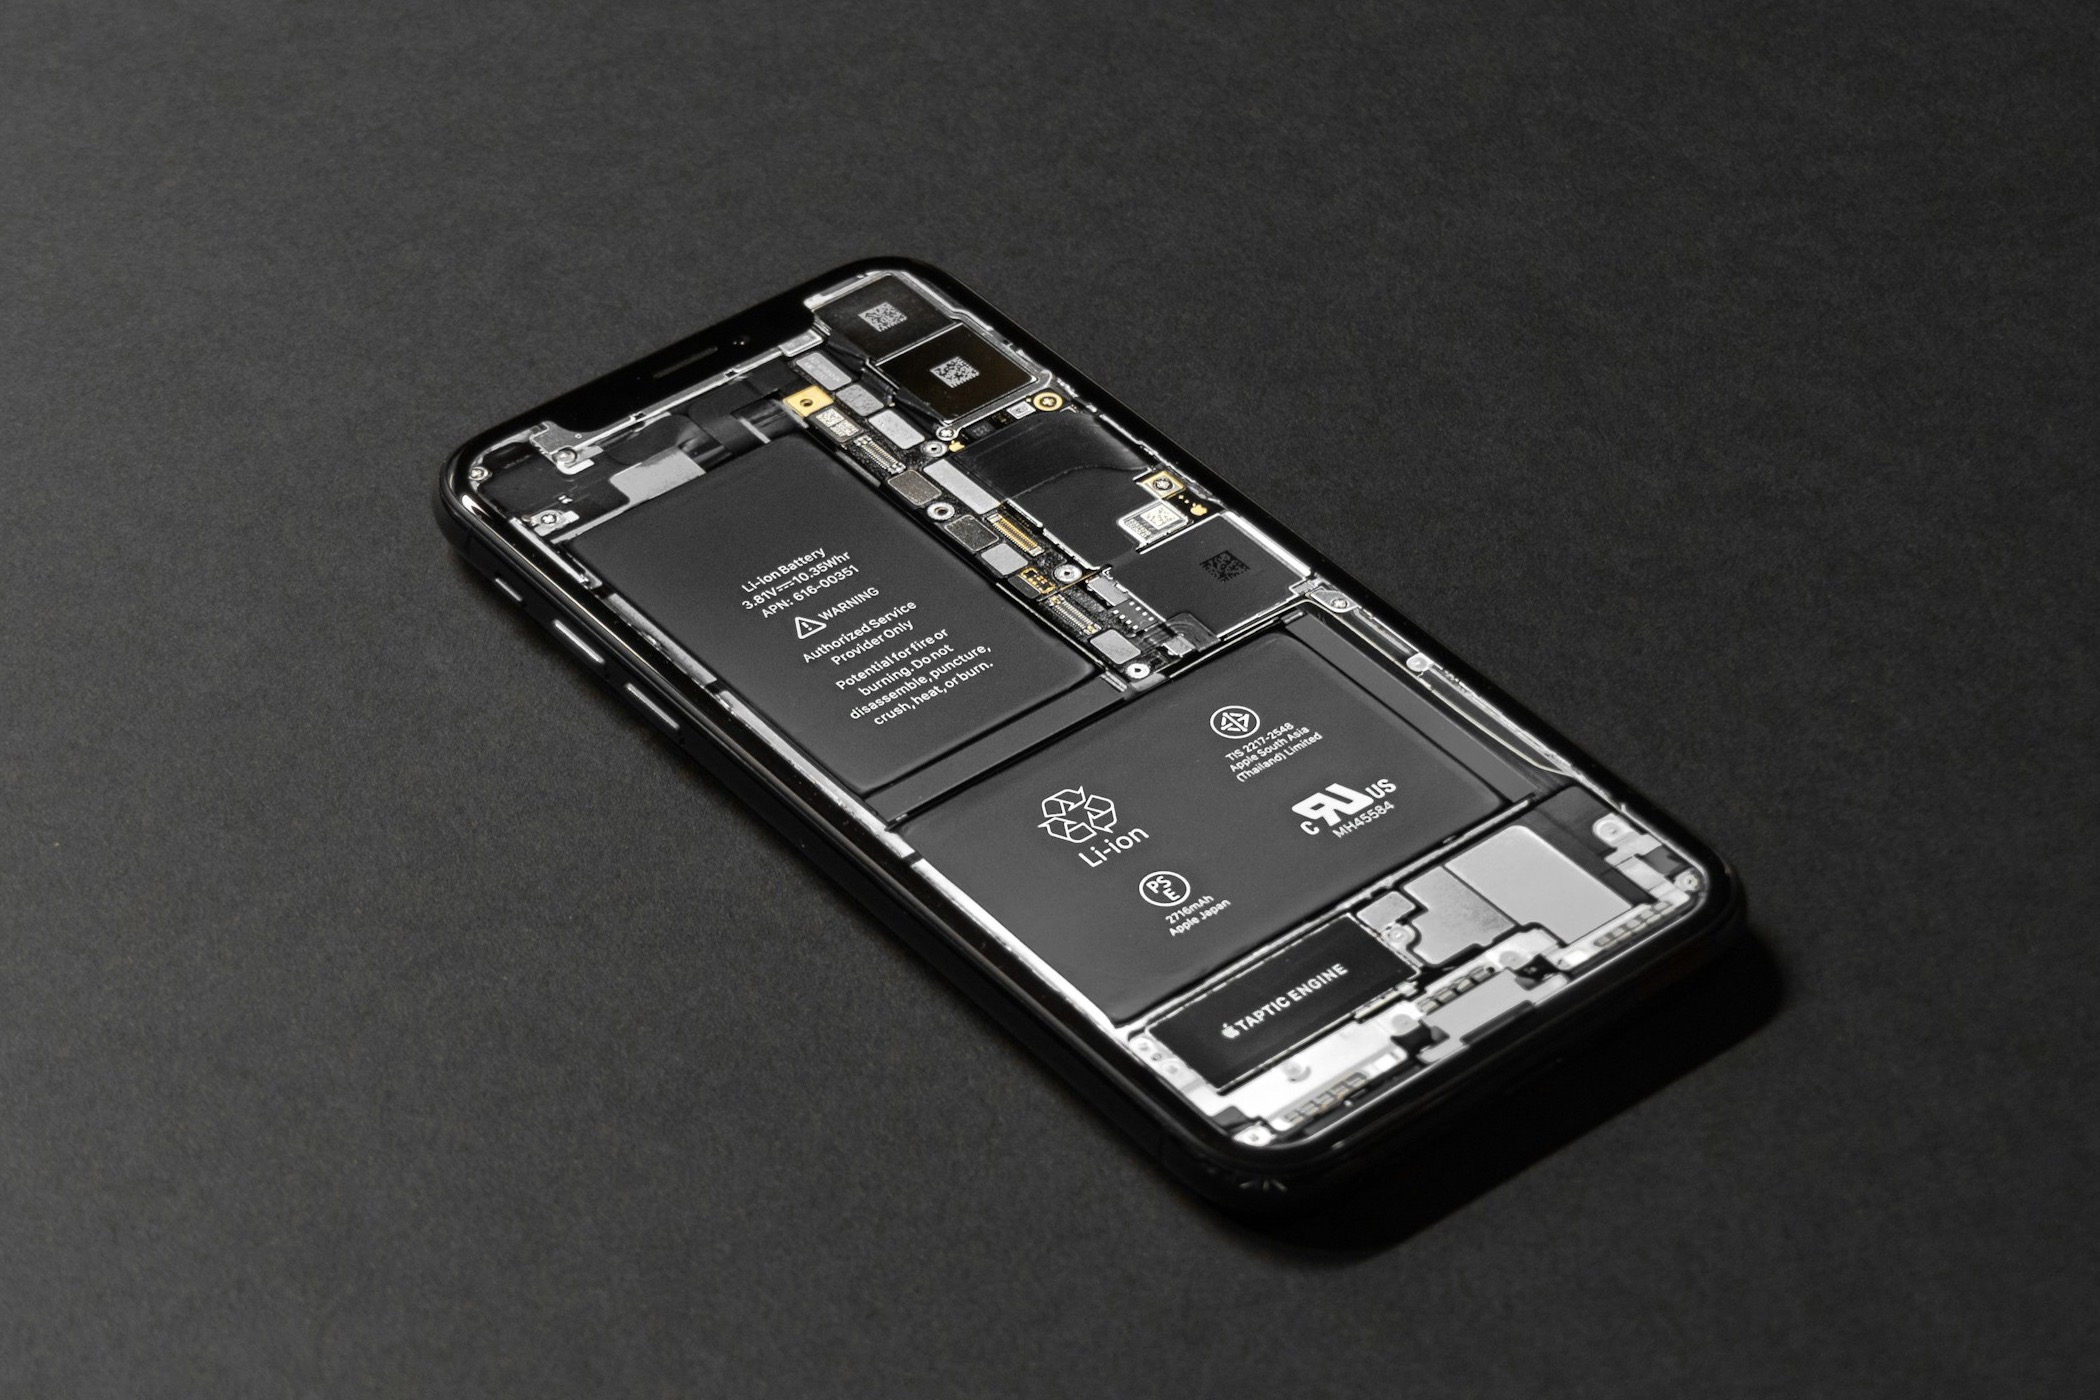 Battery inside an iPhone.